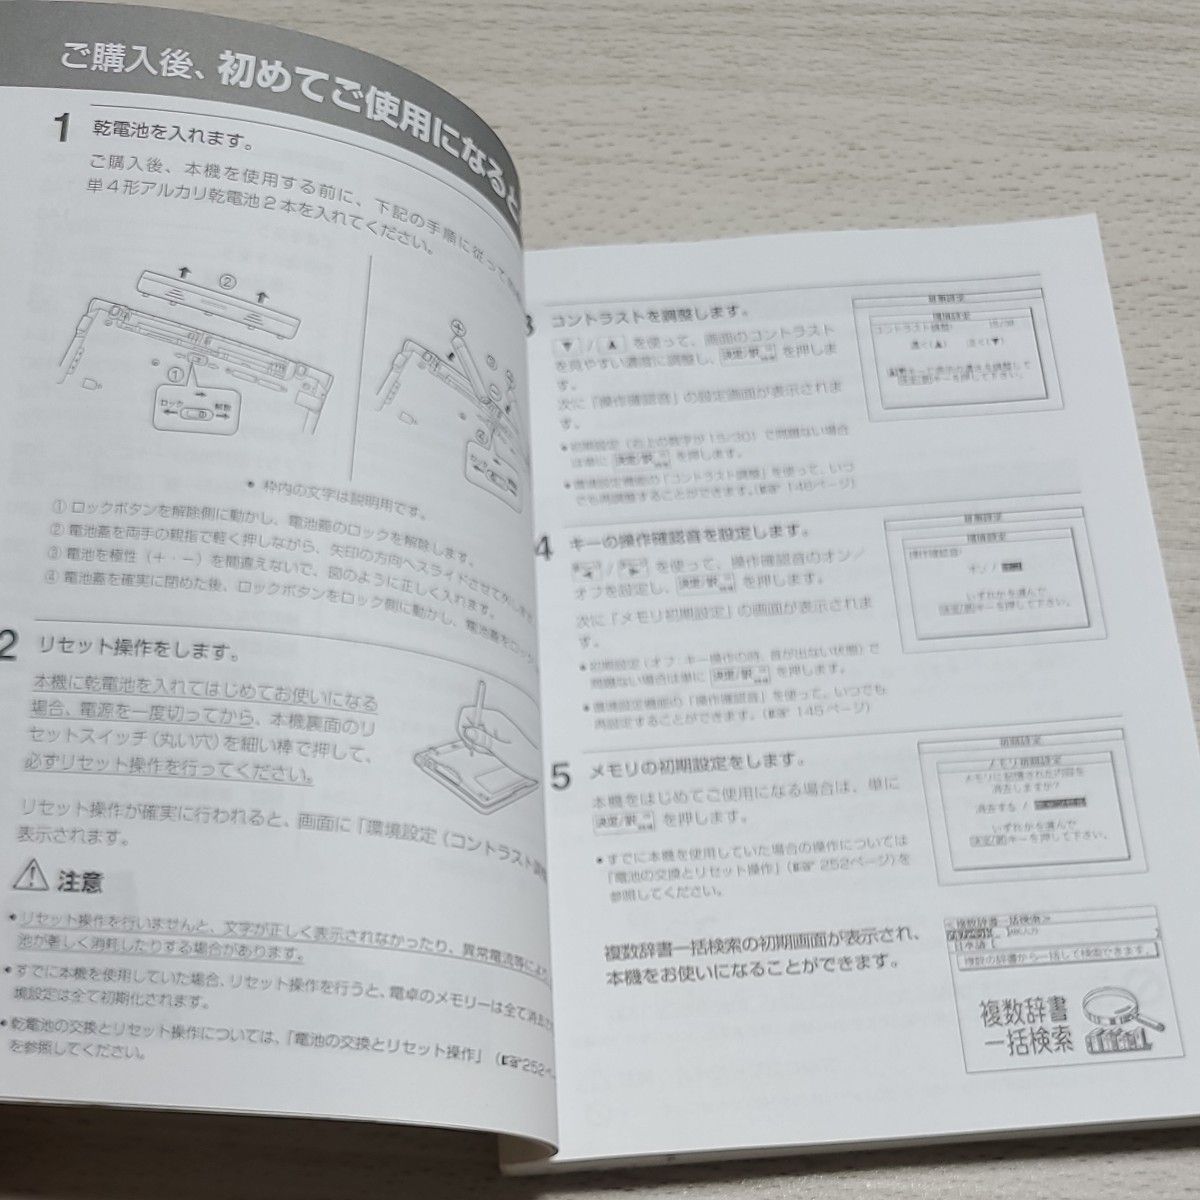 電子辞書 SEIKO IC DICTIONARY SR-E9000 (26コンテンツ, 英語充実モデル, 音声対応, シルカカード